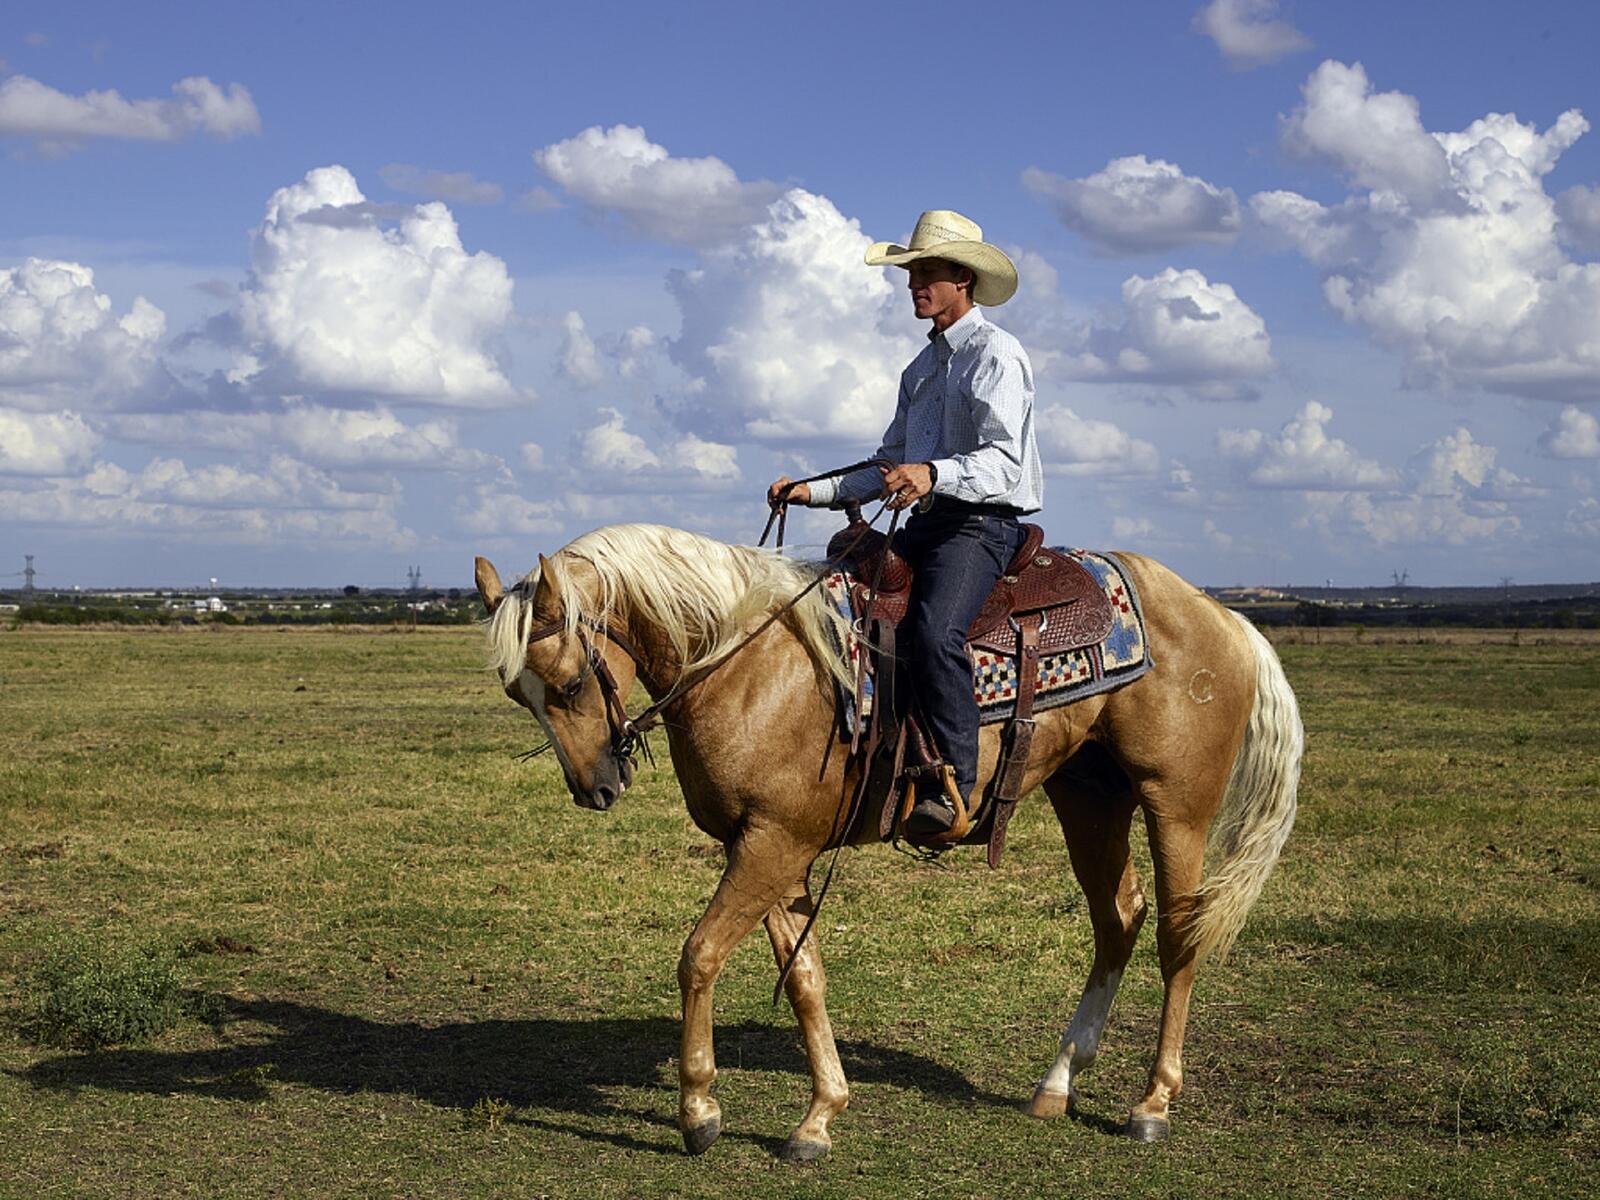 免费照片一个带着白帽子的骑手骑在马上。